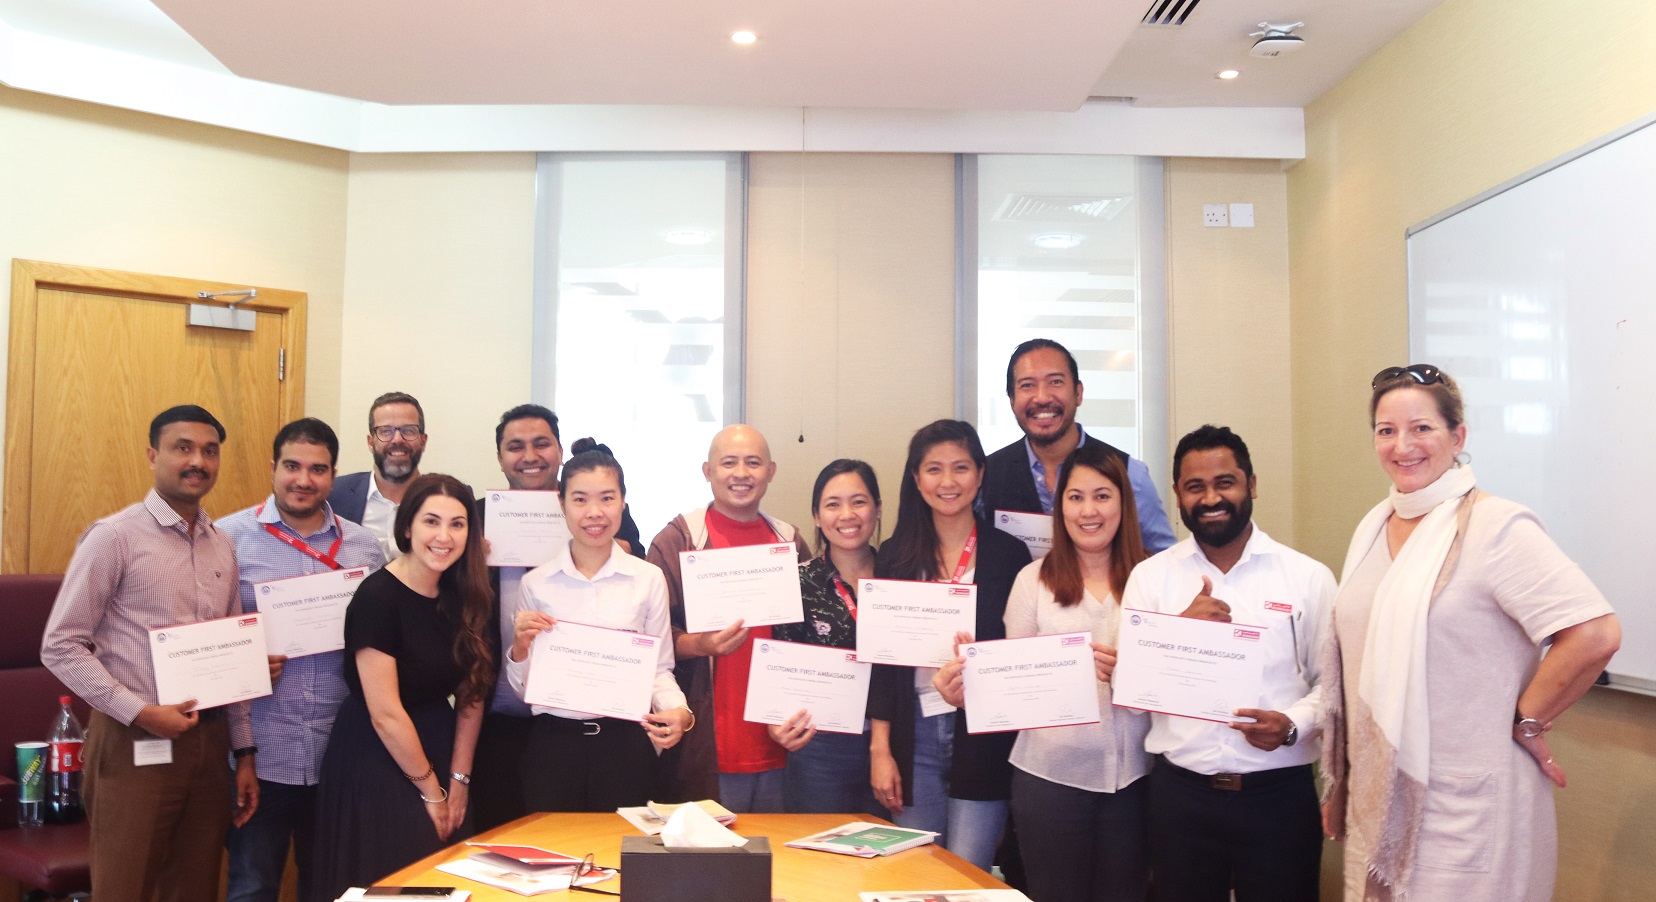 Interserve Customer Experience Team trains KFM Ambassadors